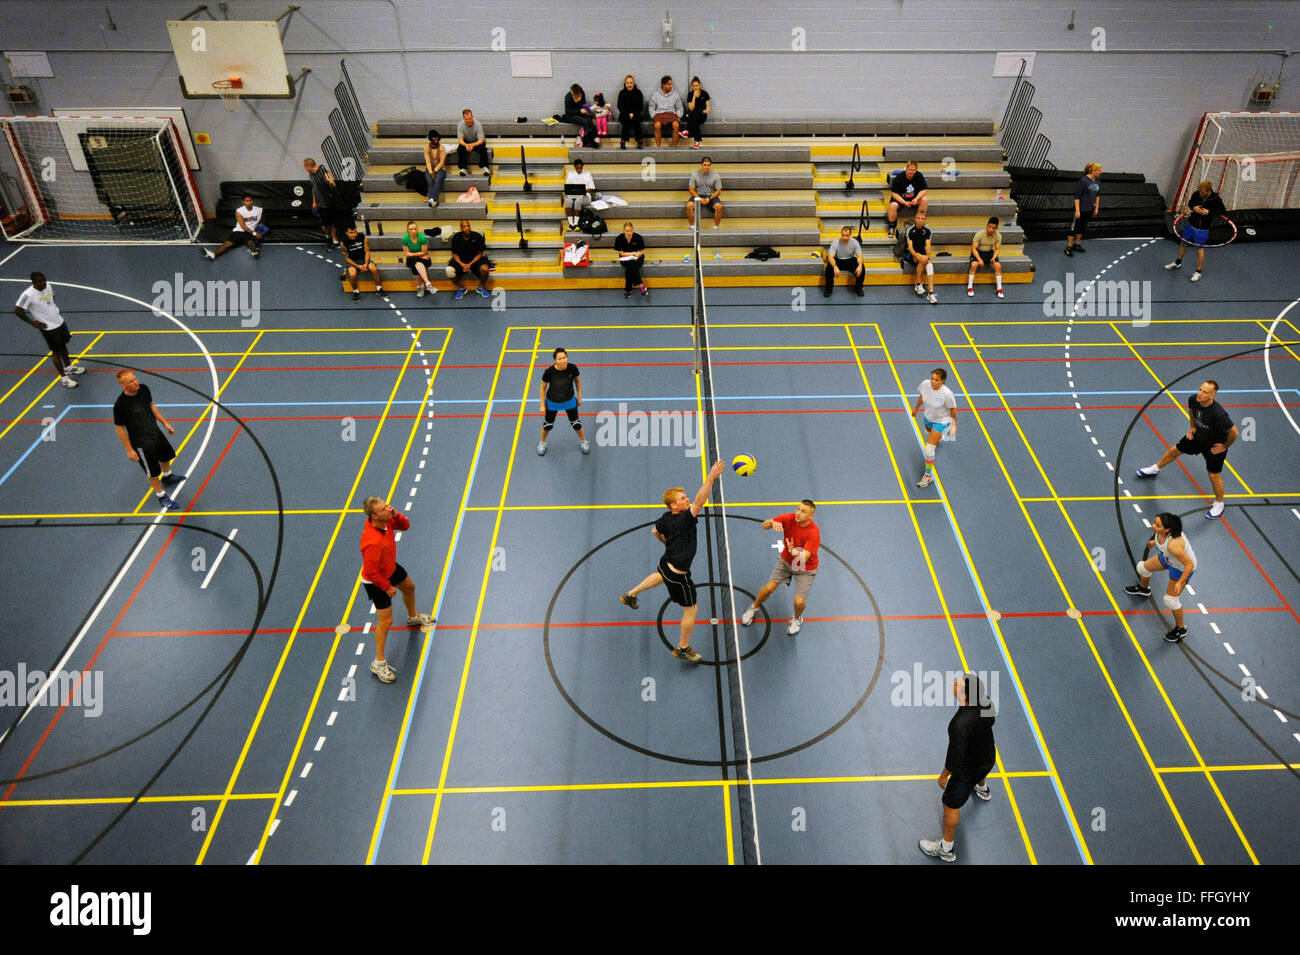 Flieger und dänischen Vertragspartner teilnehmen in einem Volleyball-Turnier in der Turnhalle Thule AB. Stockfoto